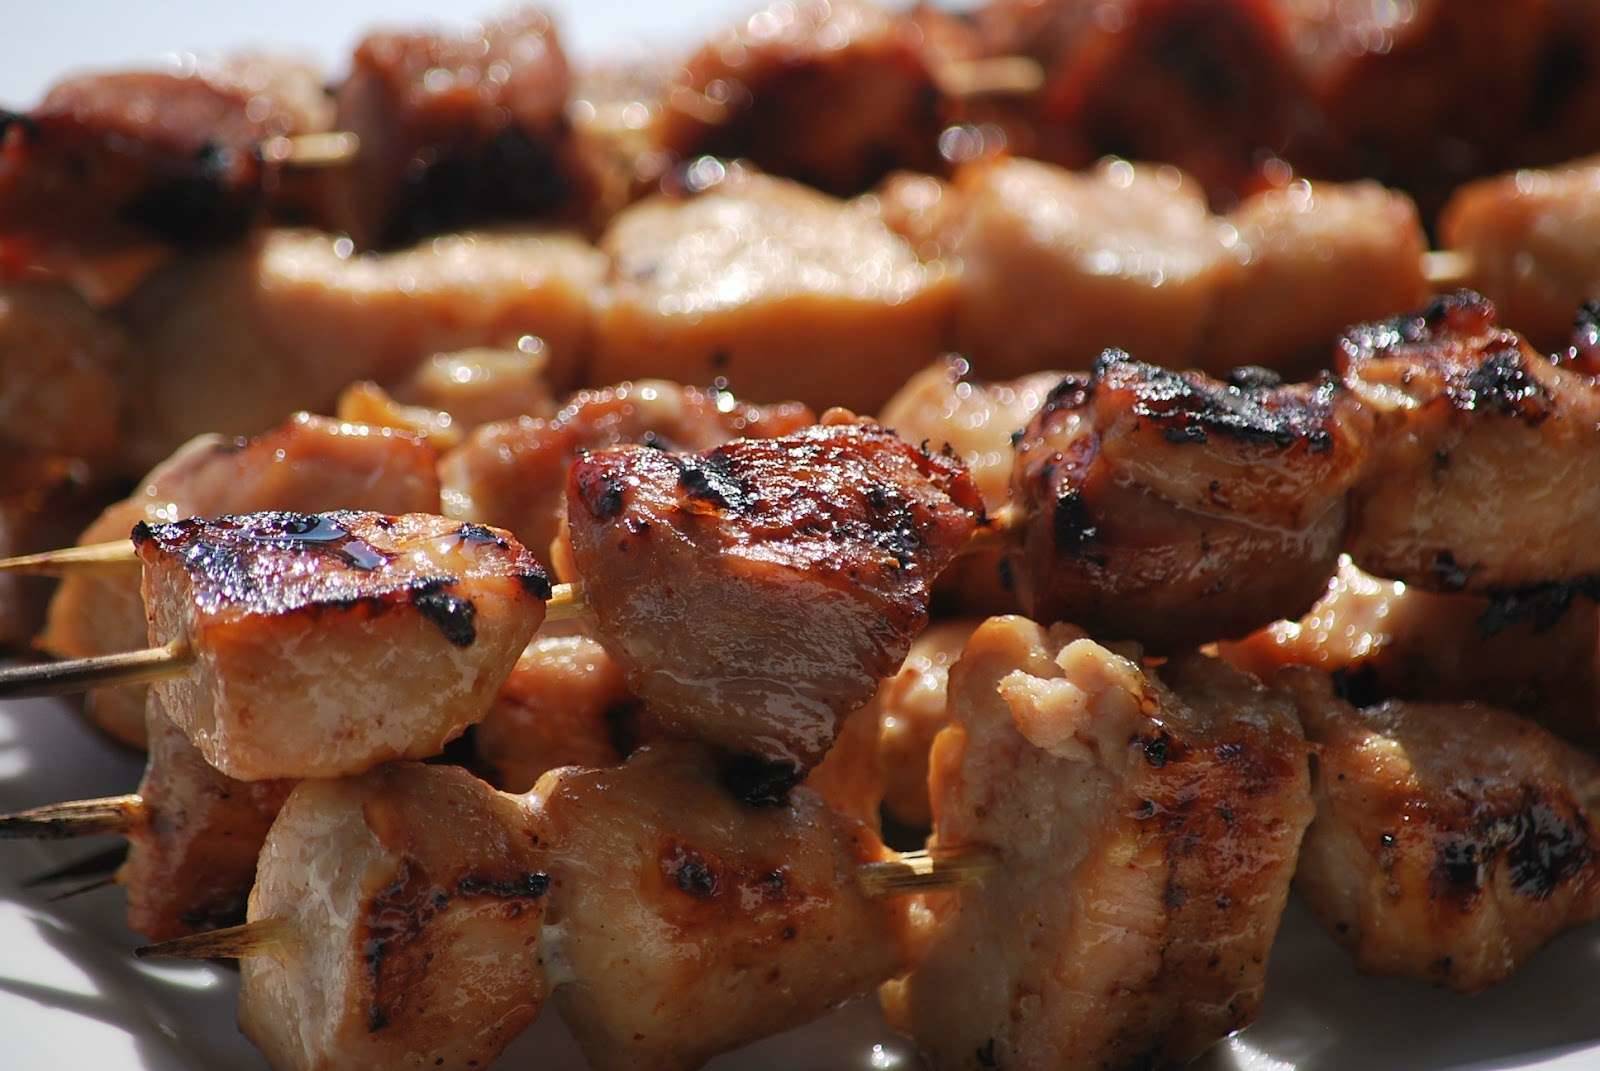 Самый вкусный маринад для шашлыка из свинины сделает мясо мягким, сочным и ароматным